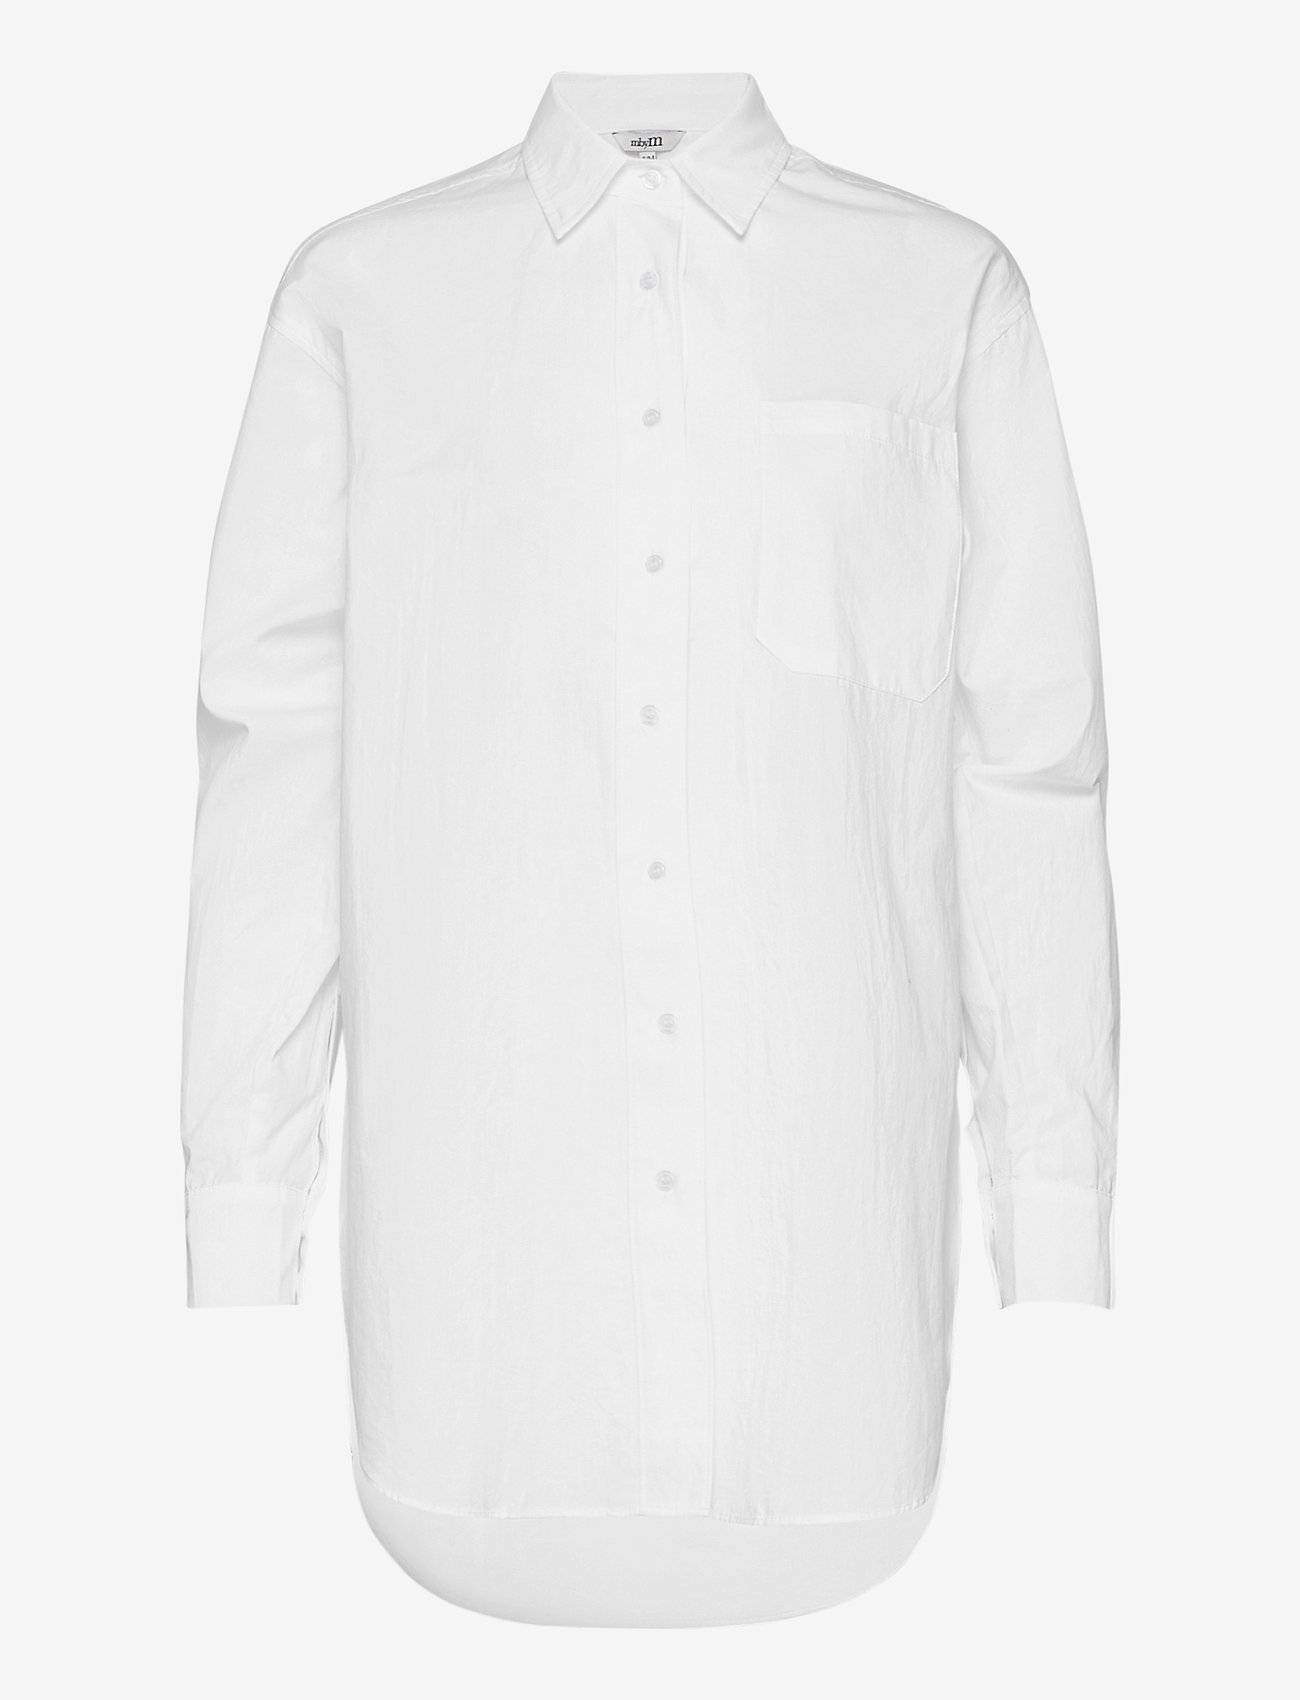 mbyM - Brisa - long-sleeved shirts - white - 0